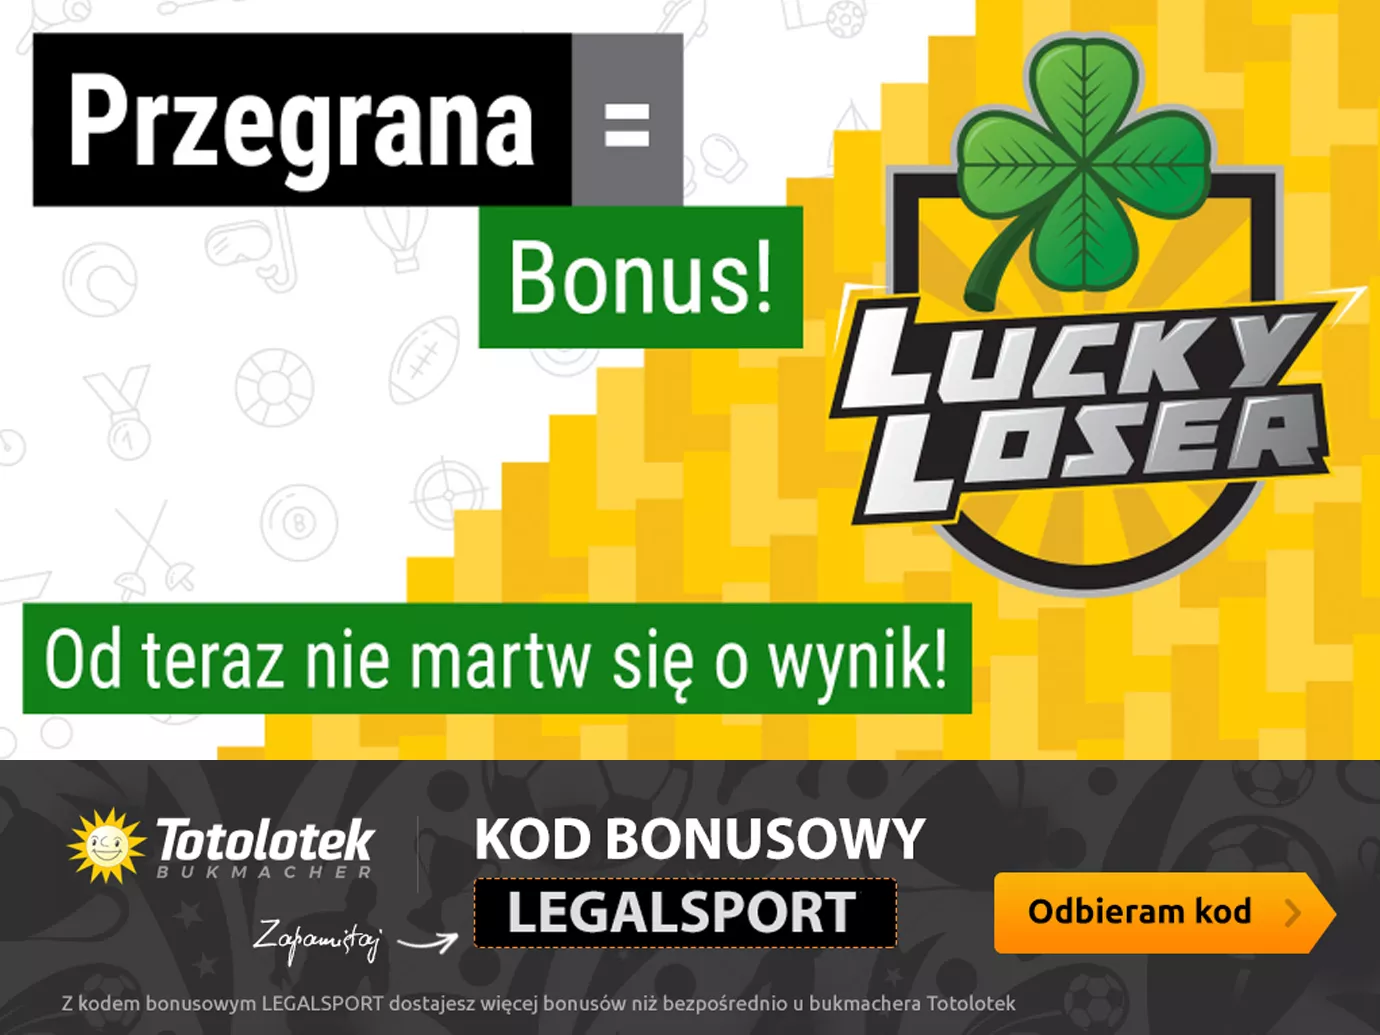 Promocja Lucky Loser w Totolotku